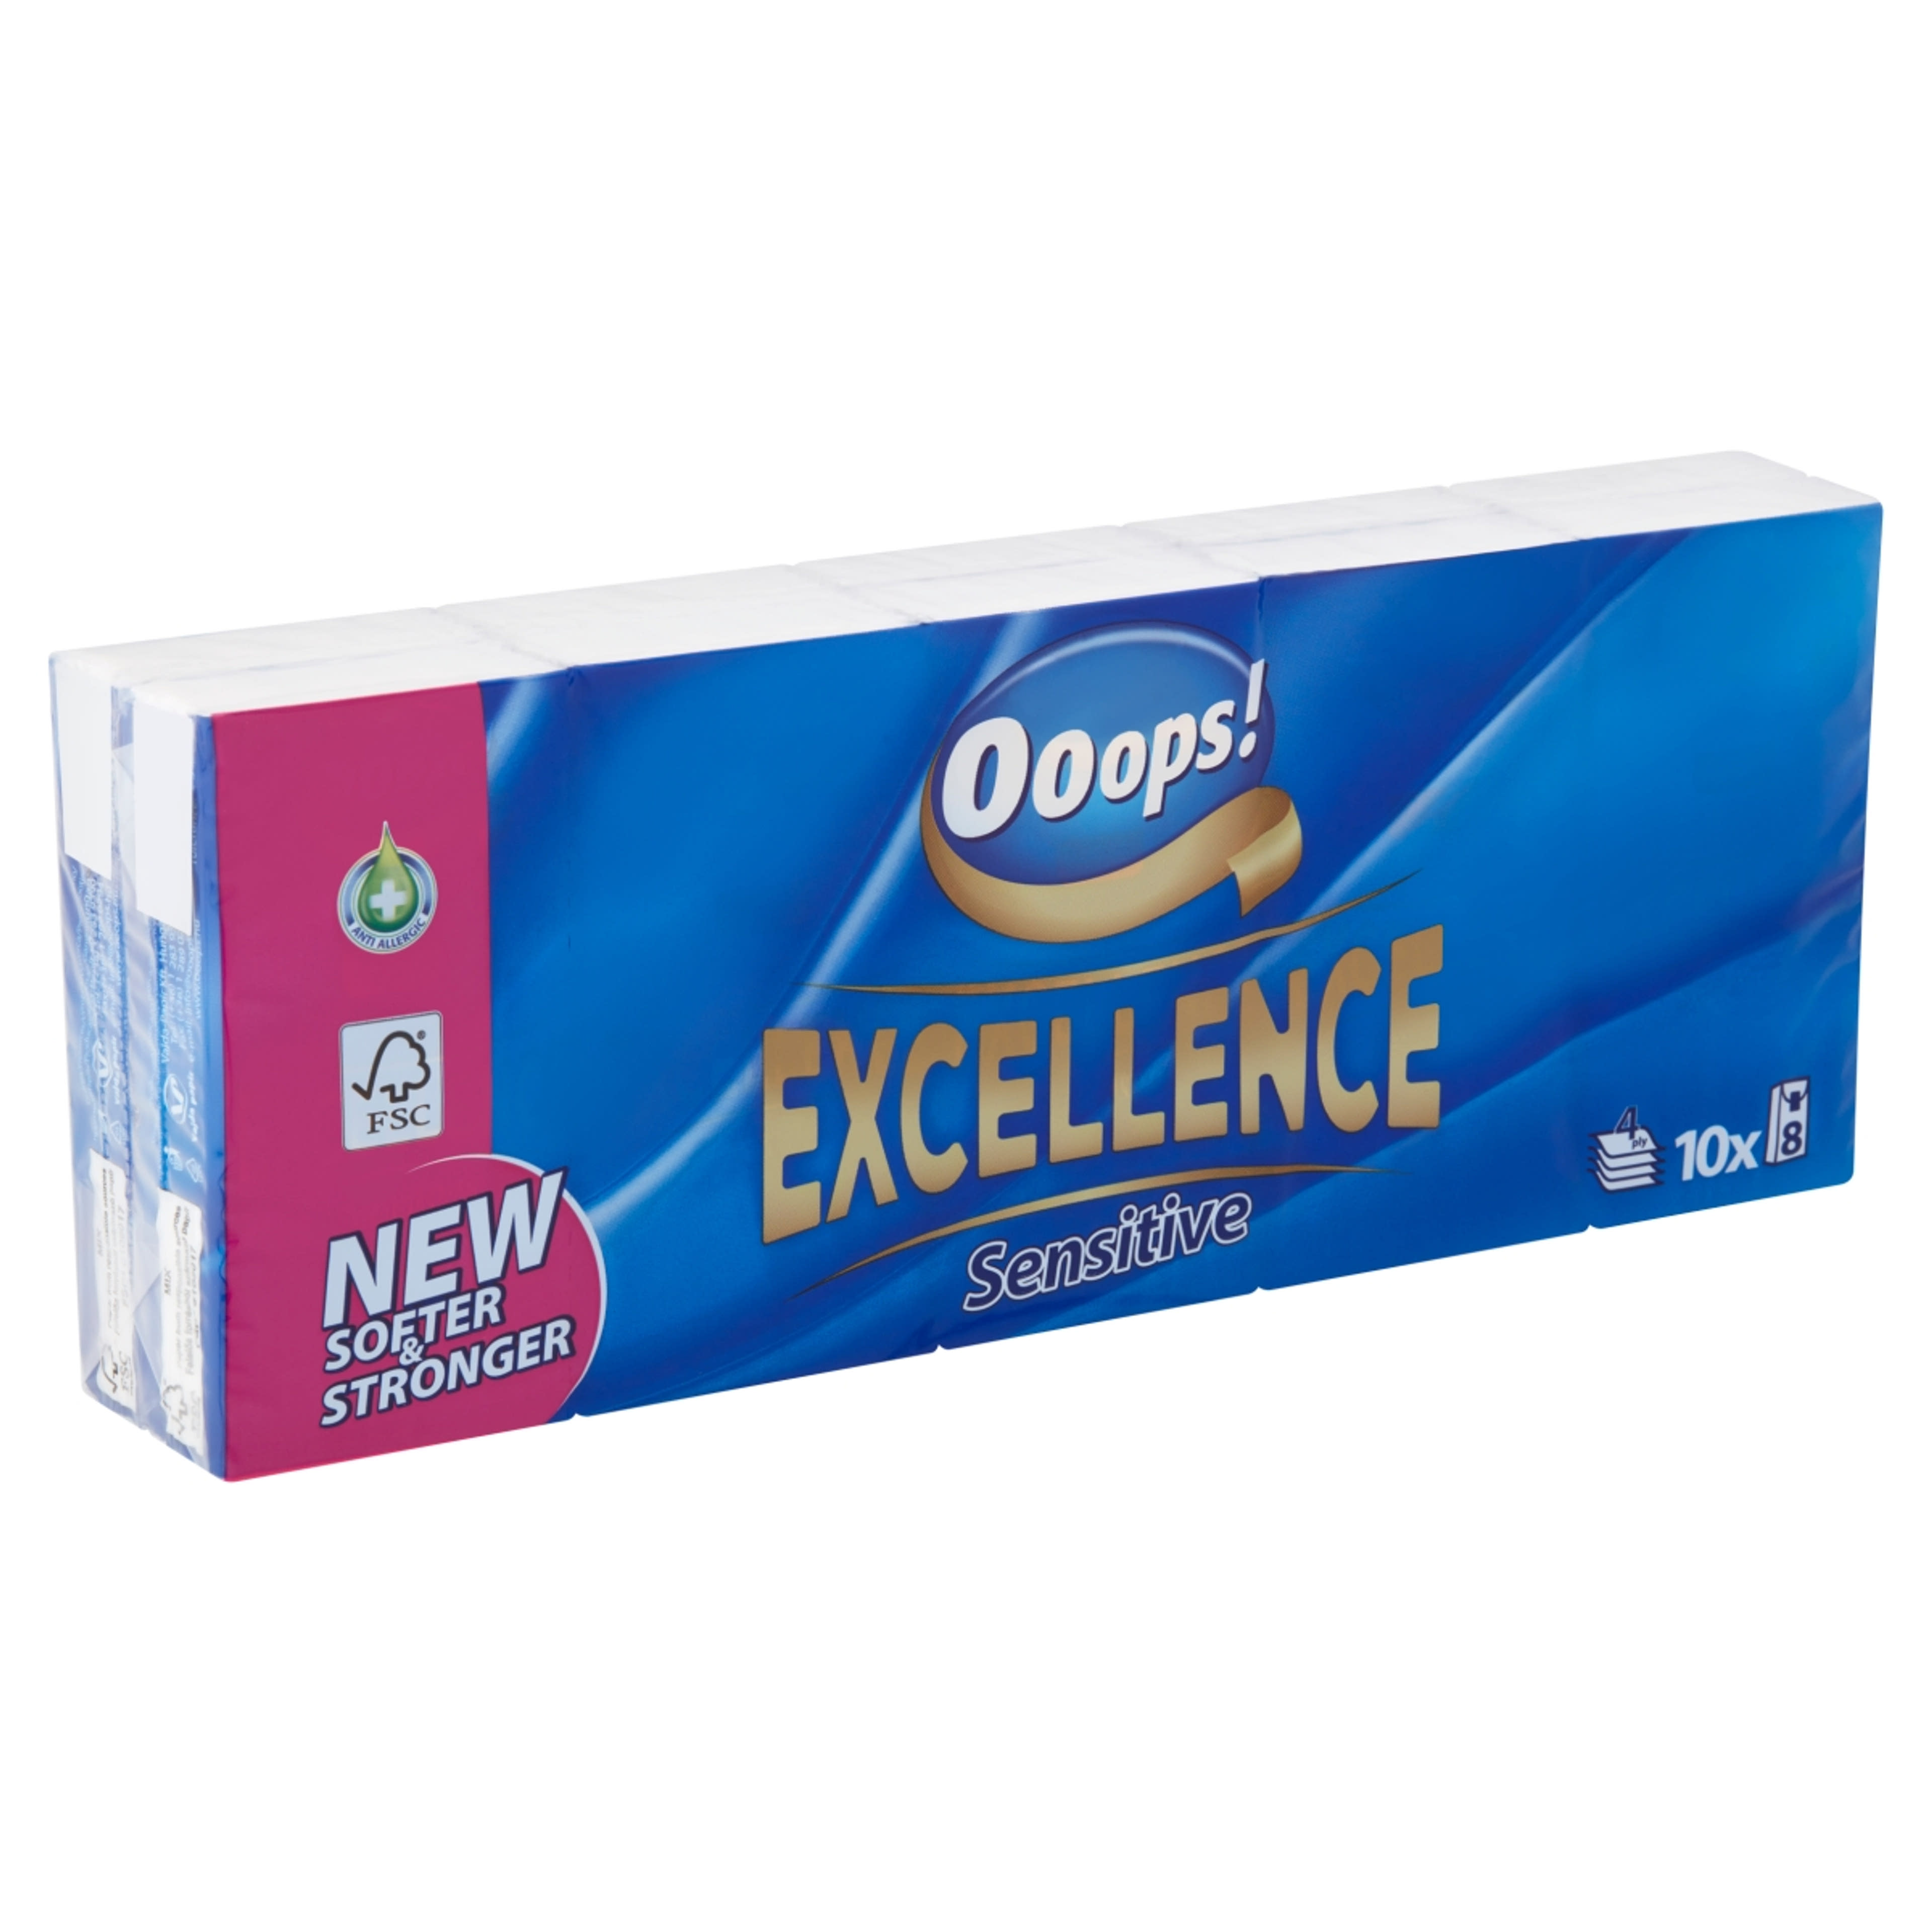 Ooops! Excellence Sensitive papír zsebkendő 4 rétegű 10x8 db - 80 db-2